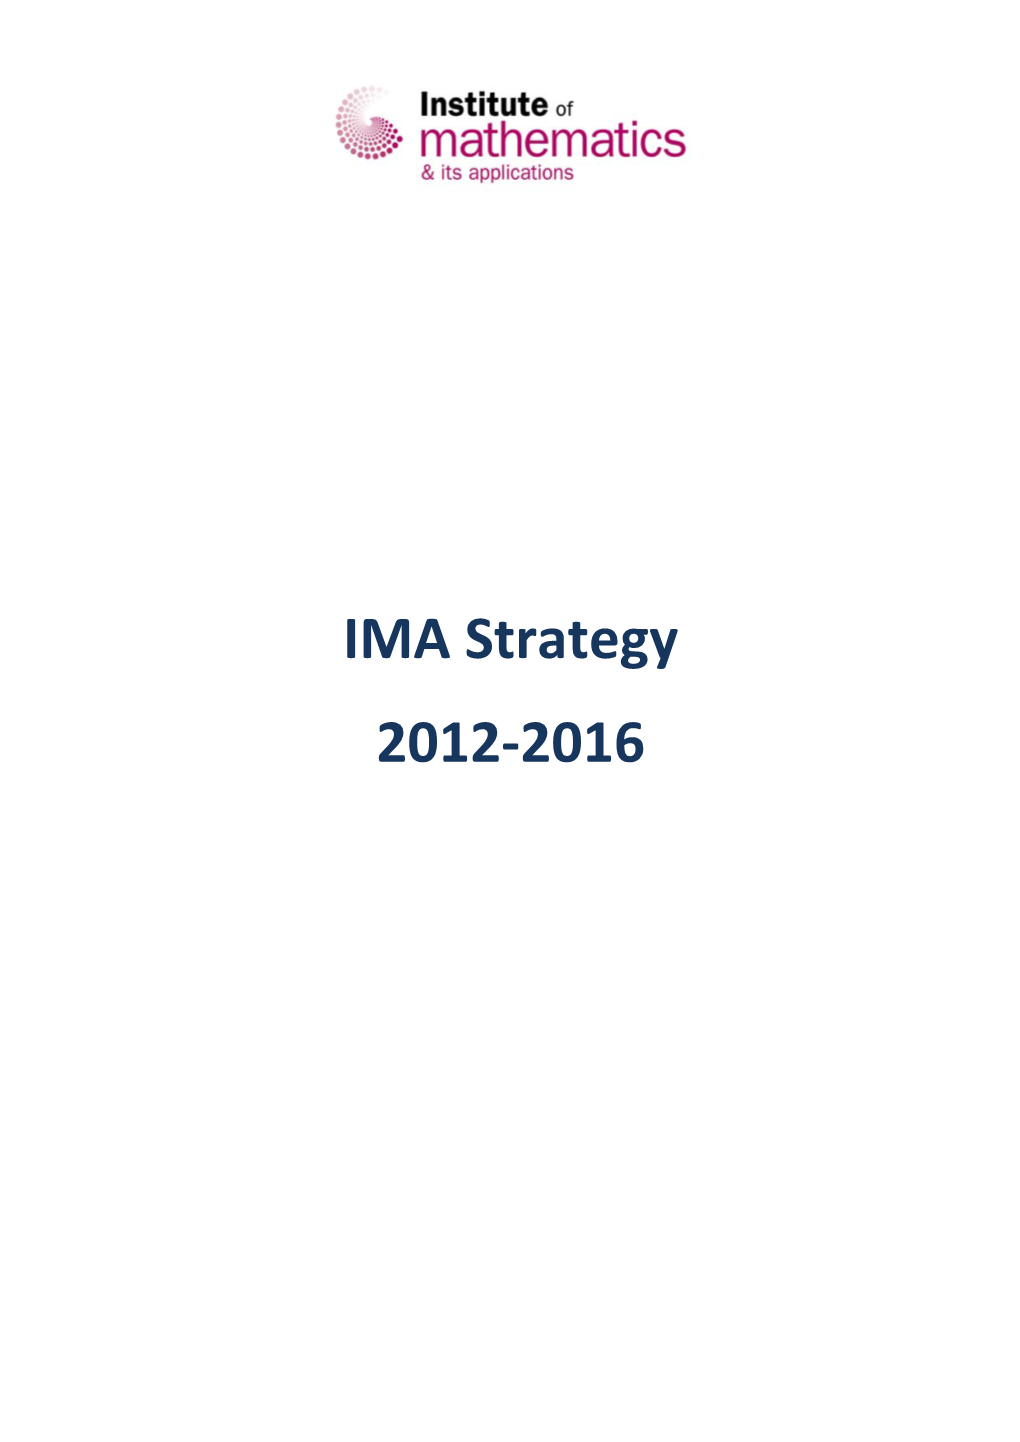 IMA Strategy 2012-2016